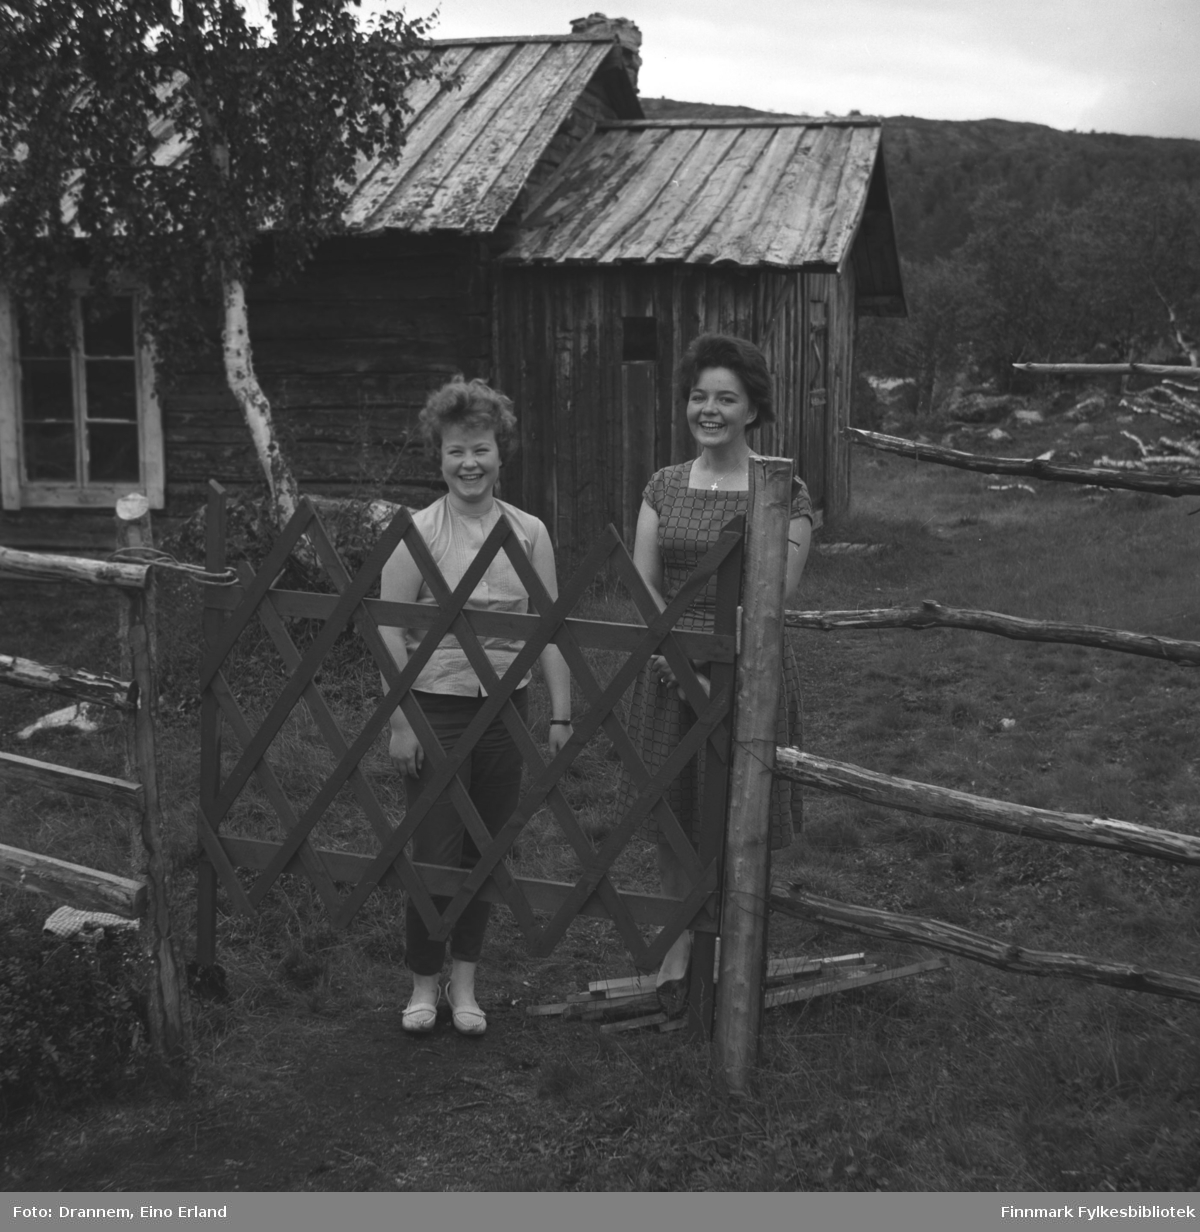 Turid Karikoski og Maija Hoikka (født Gerasimoff) fotografert på en gårdsplass i den finske siden ved Luolajärvi.